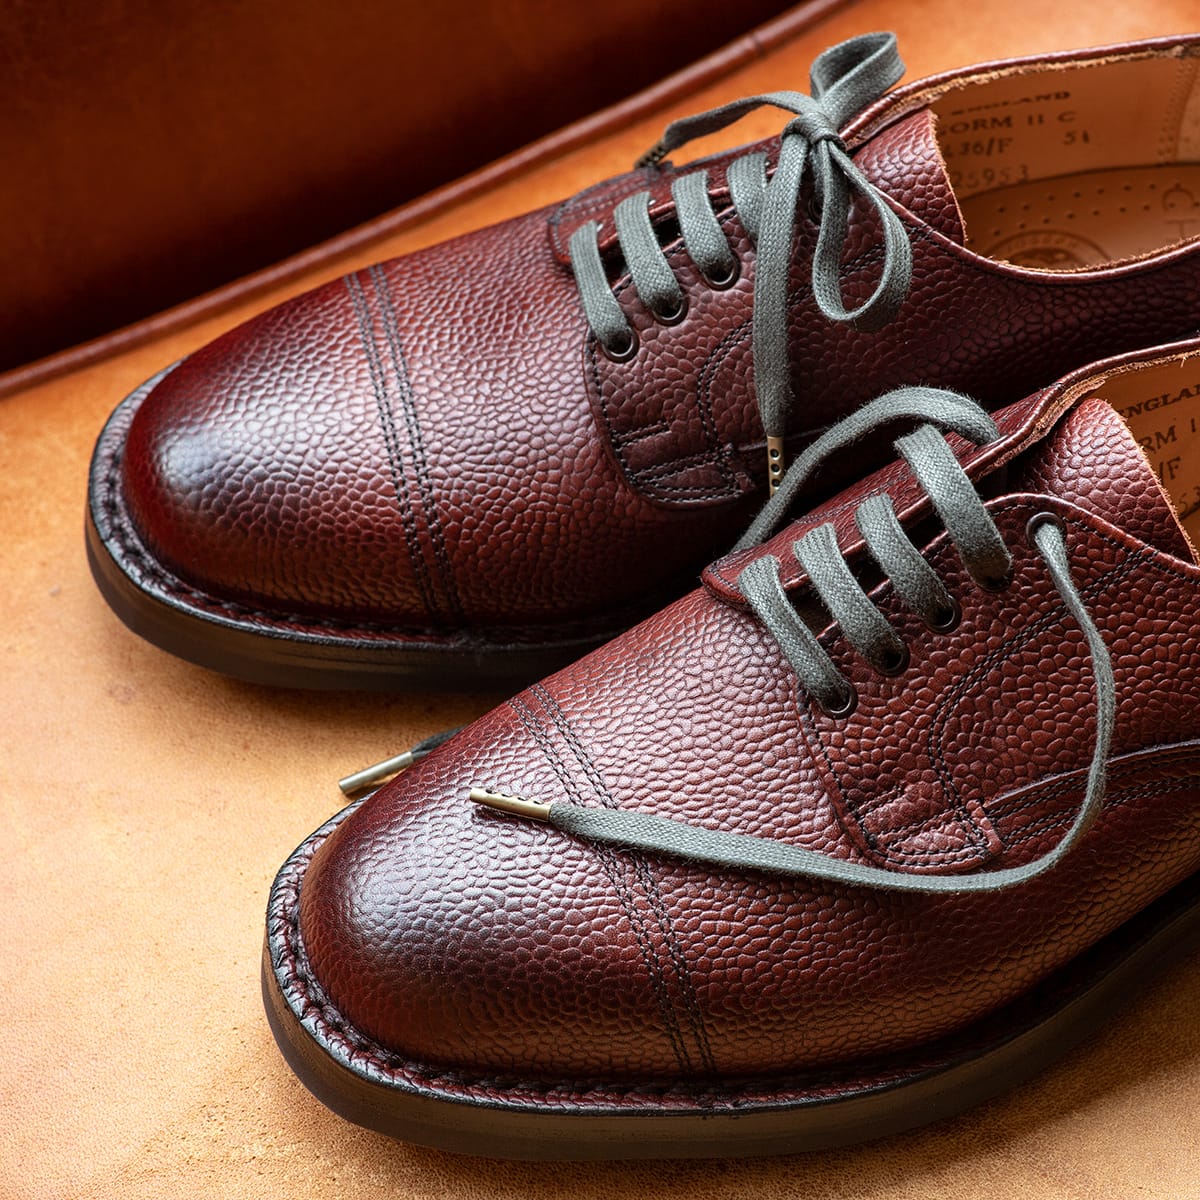 愛用の革靴が大変身 なんとシューレースを交換したら British Made Staff Blog